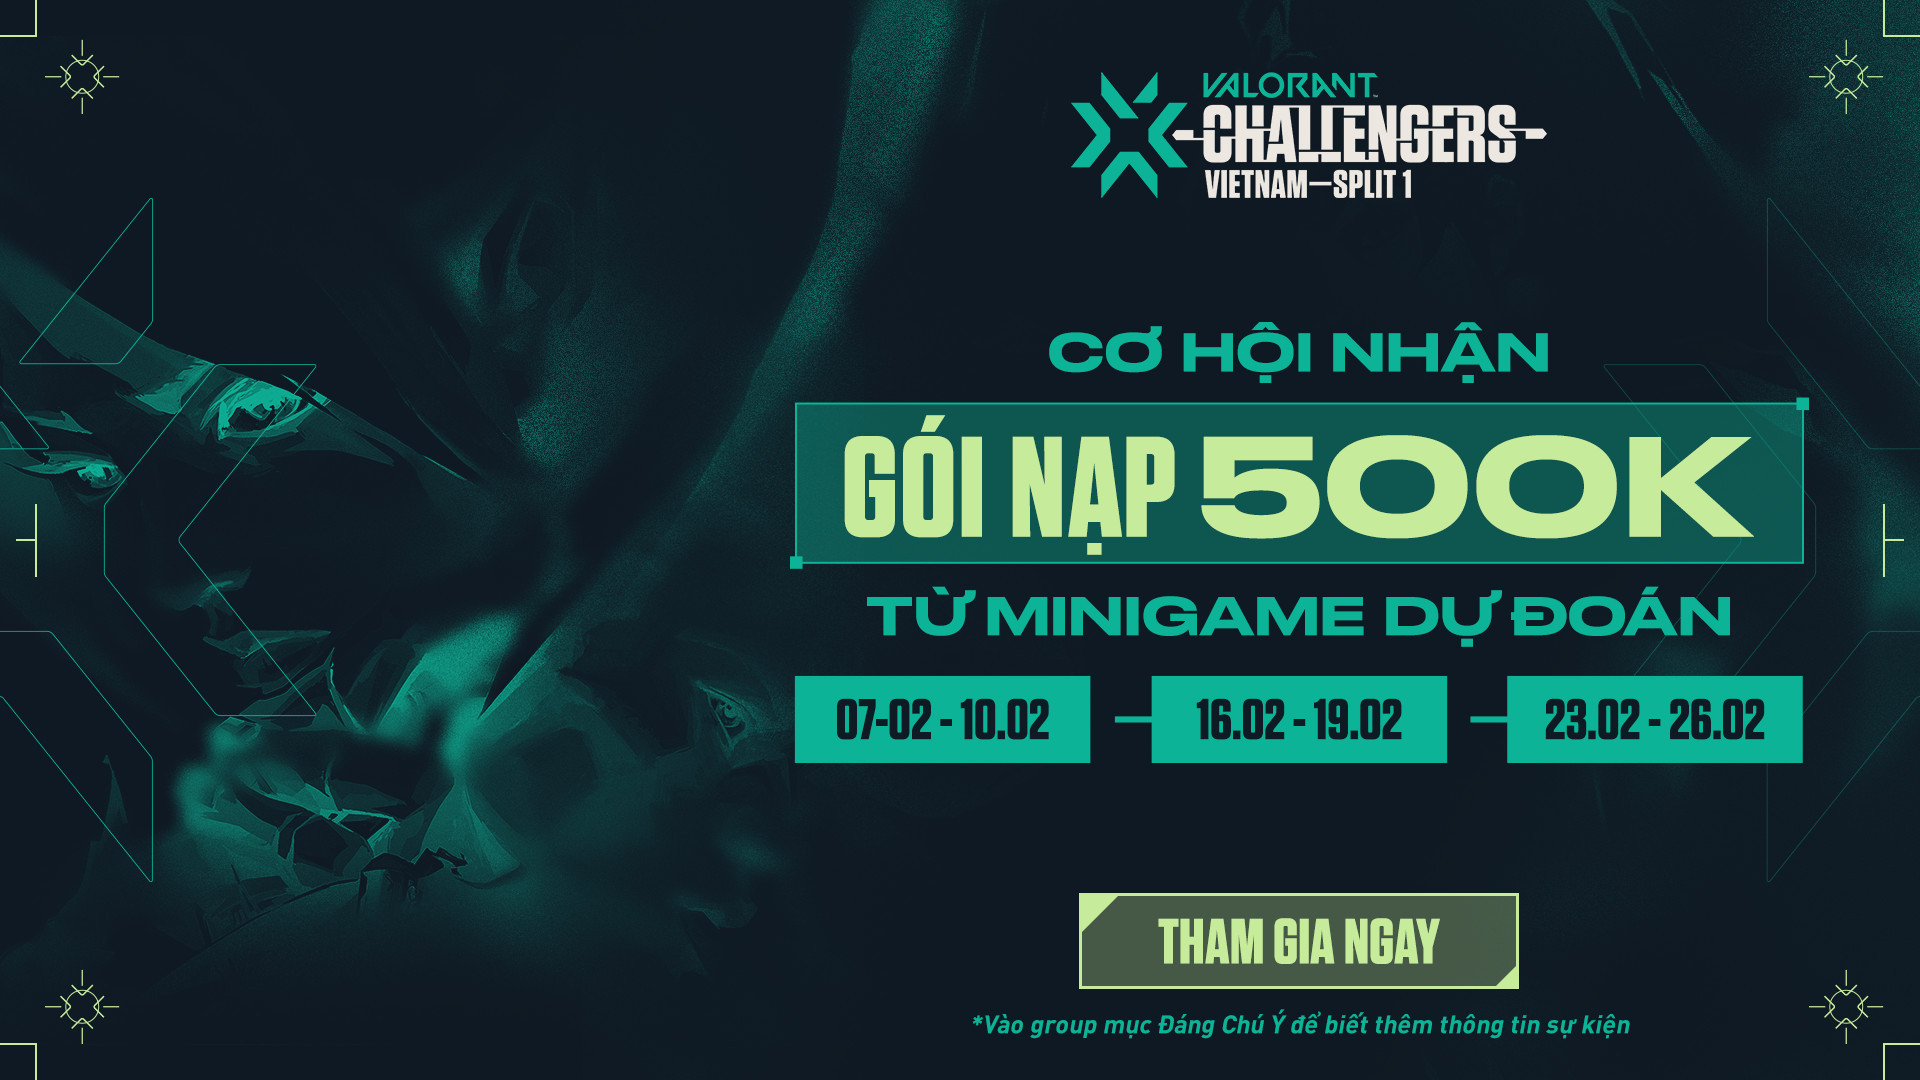 Săn VP cùng Event đồng hành giải đấu VCT Challengers Vietnam 2023 Split 1